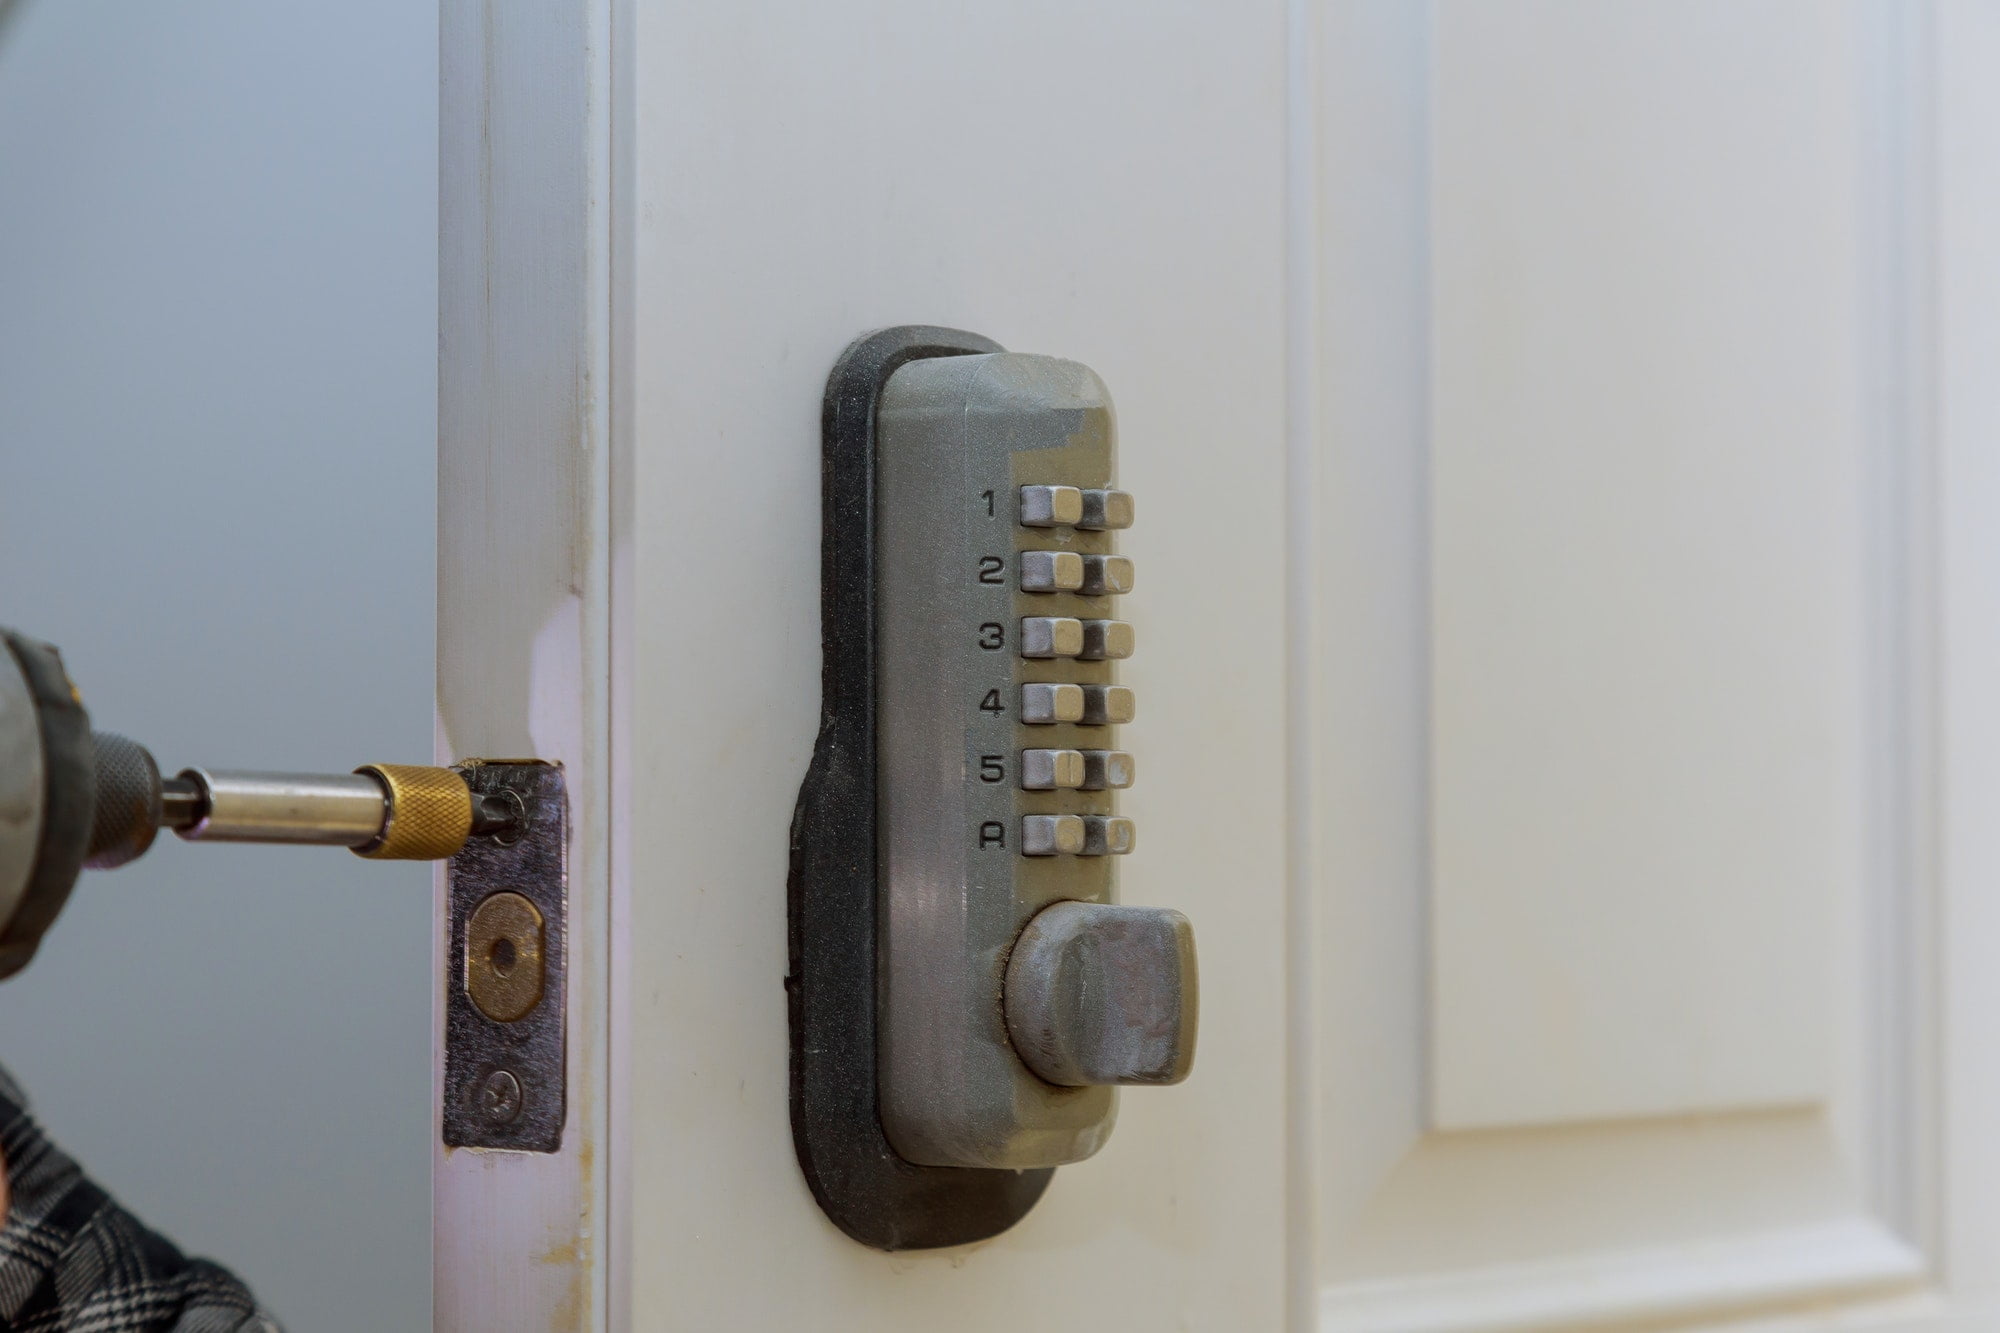 Digital door lock system with keypad